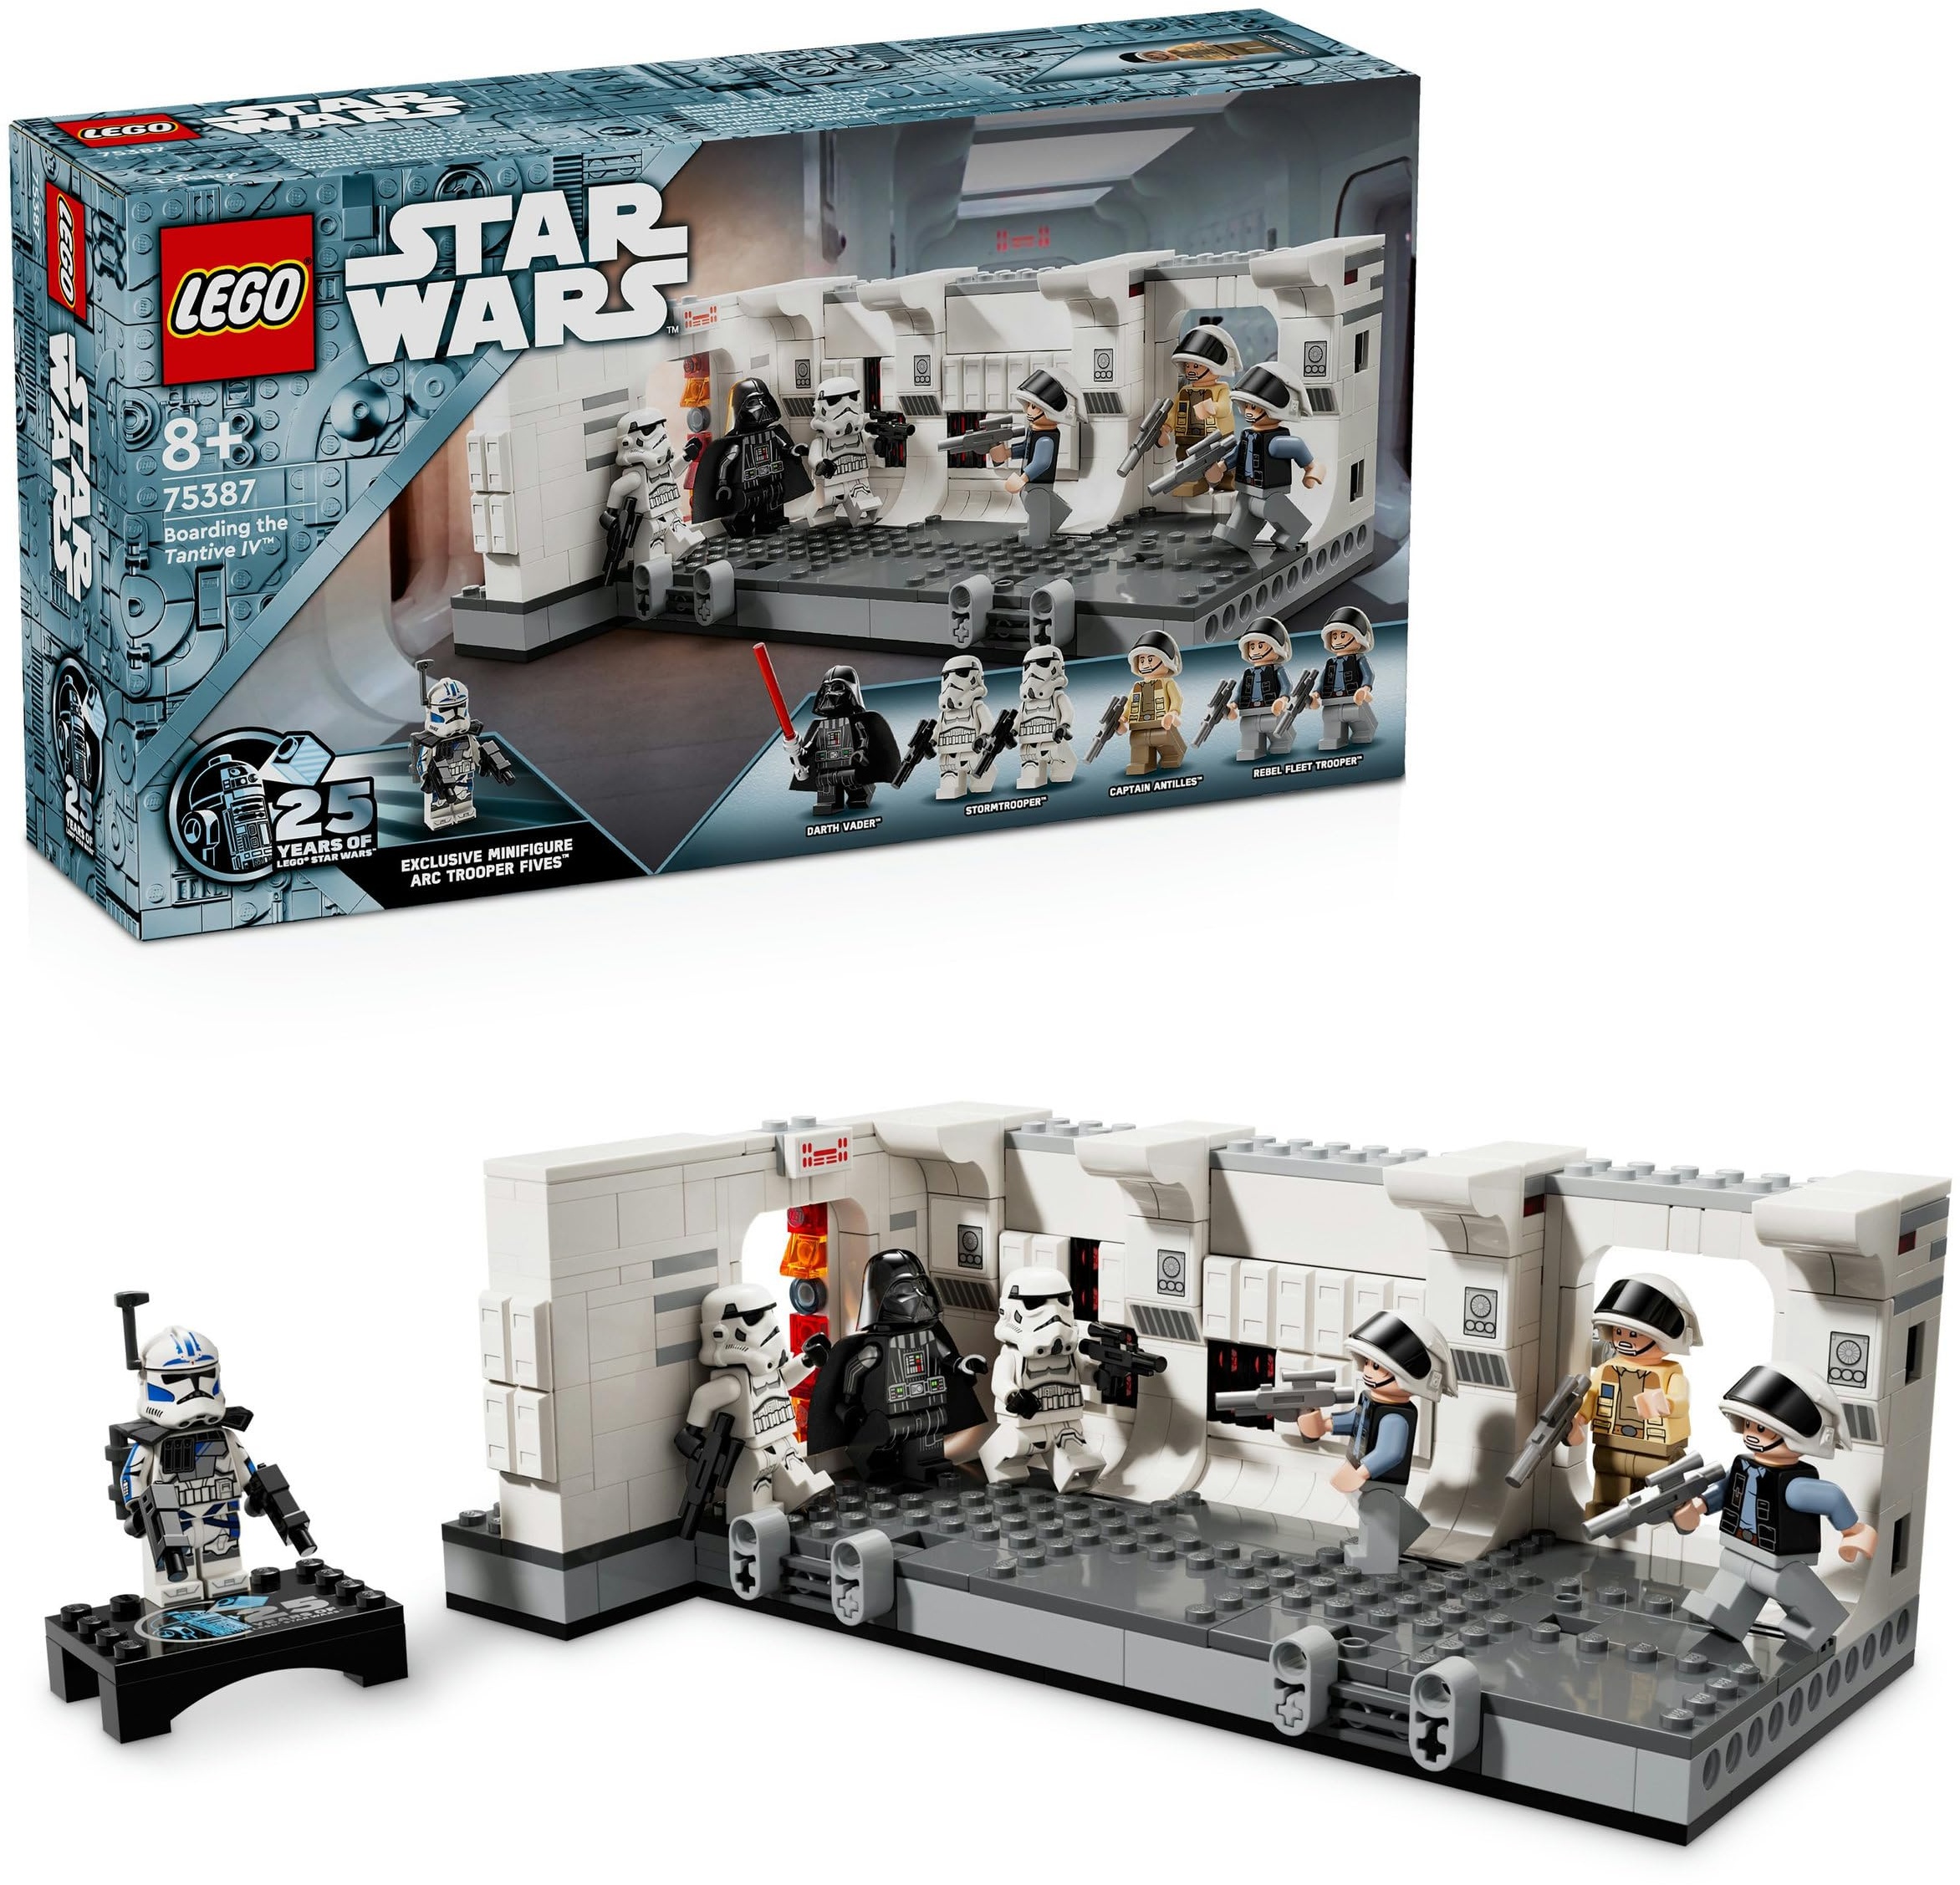 LEGO Star Wars Das Entern der Tantive IV, Bauspielzeug zum Film Eine Neue Hoffnung, Fantasy-Spielset für Kinder zum Sammeln, Geschenk-Idee für Jungen und Mädchen ab 8 Jahren sowie für Sammler 75387